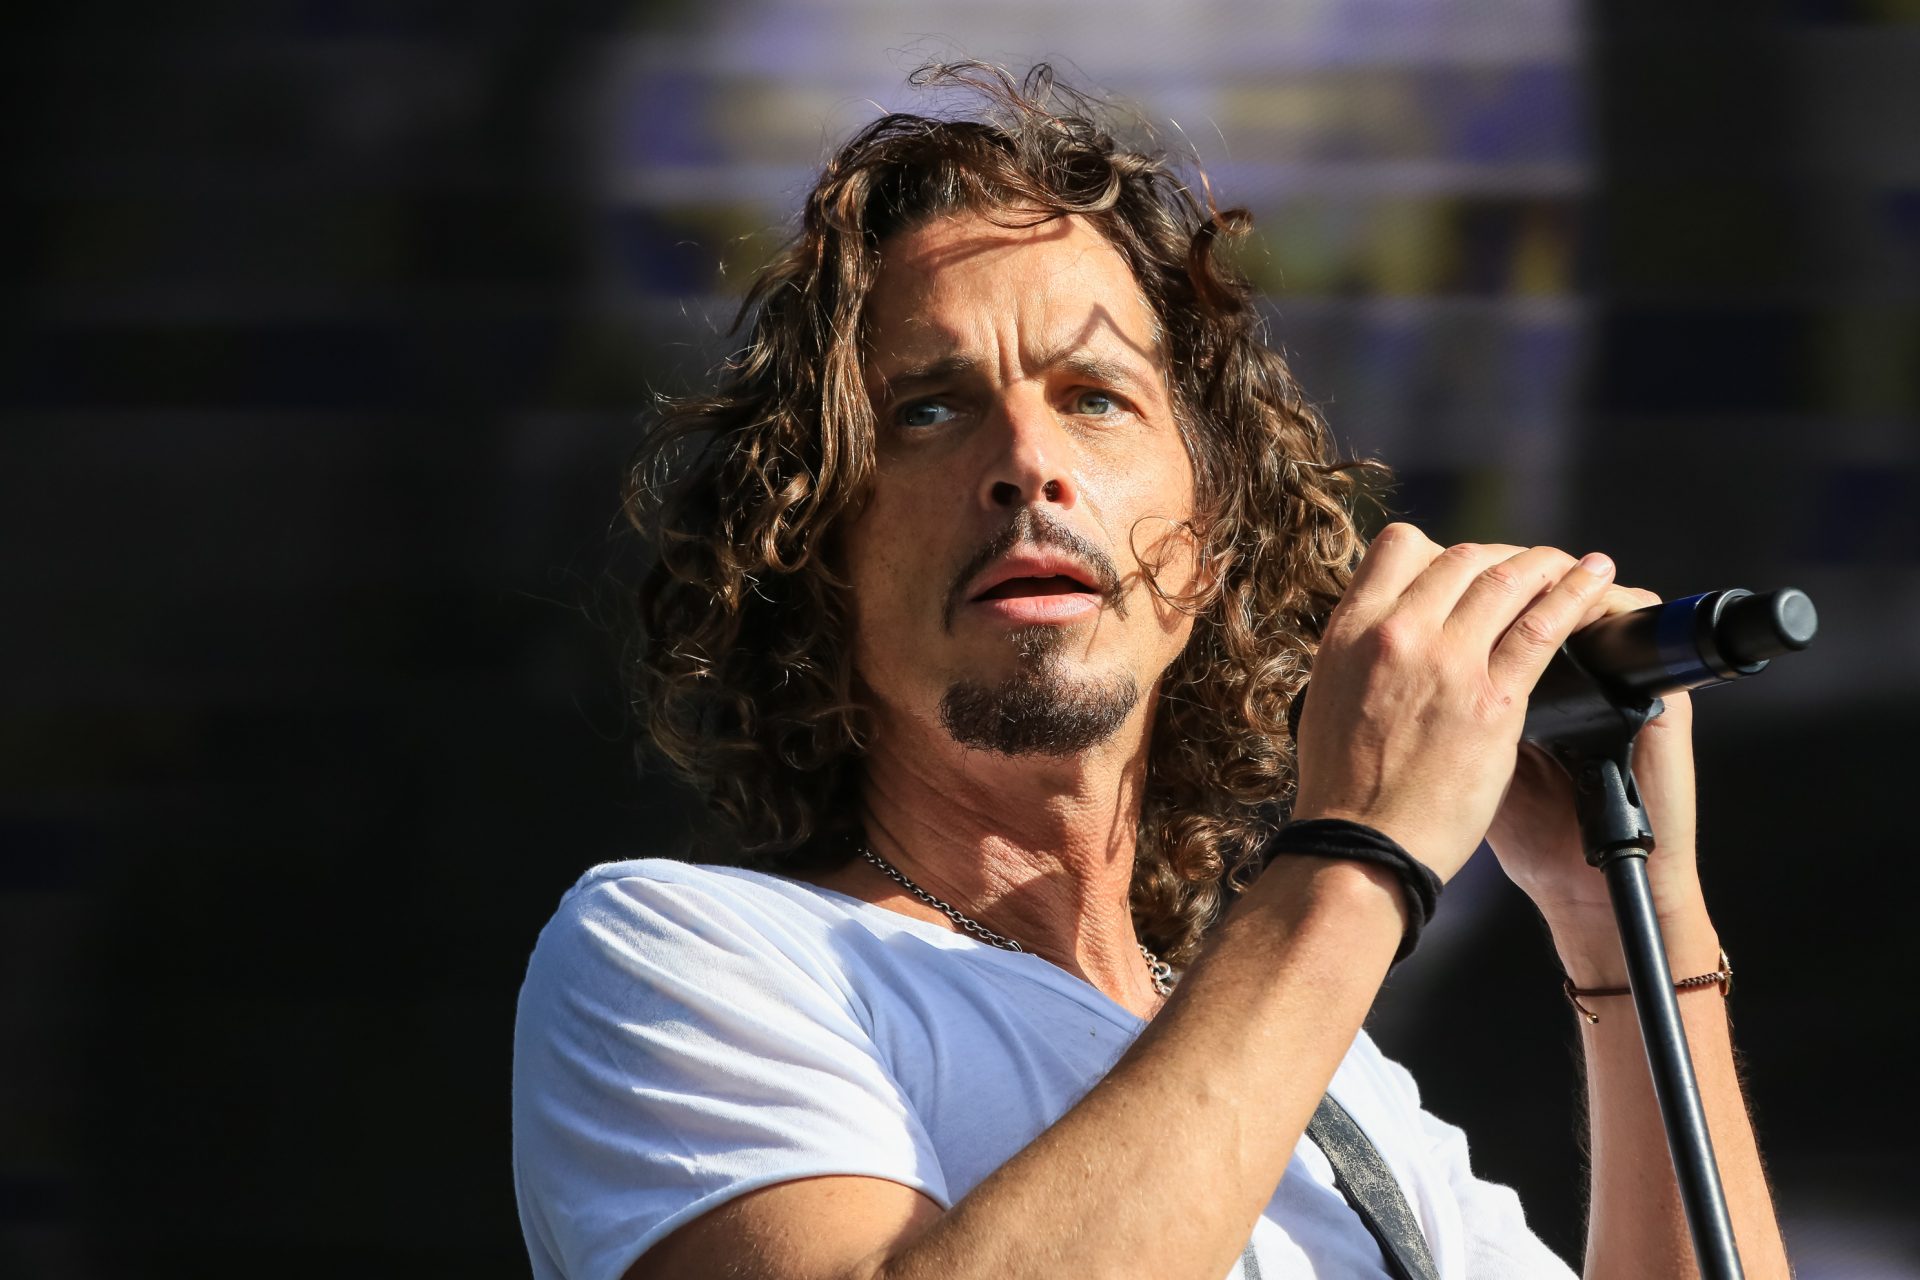 Chris Cornell (Soundgarden)